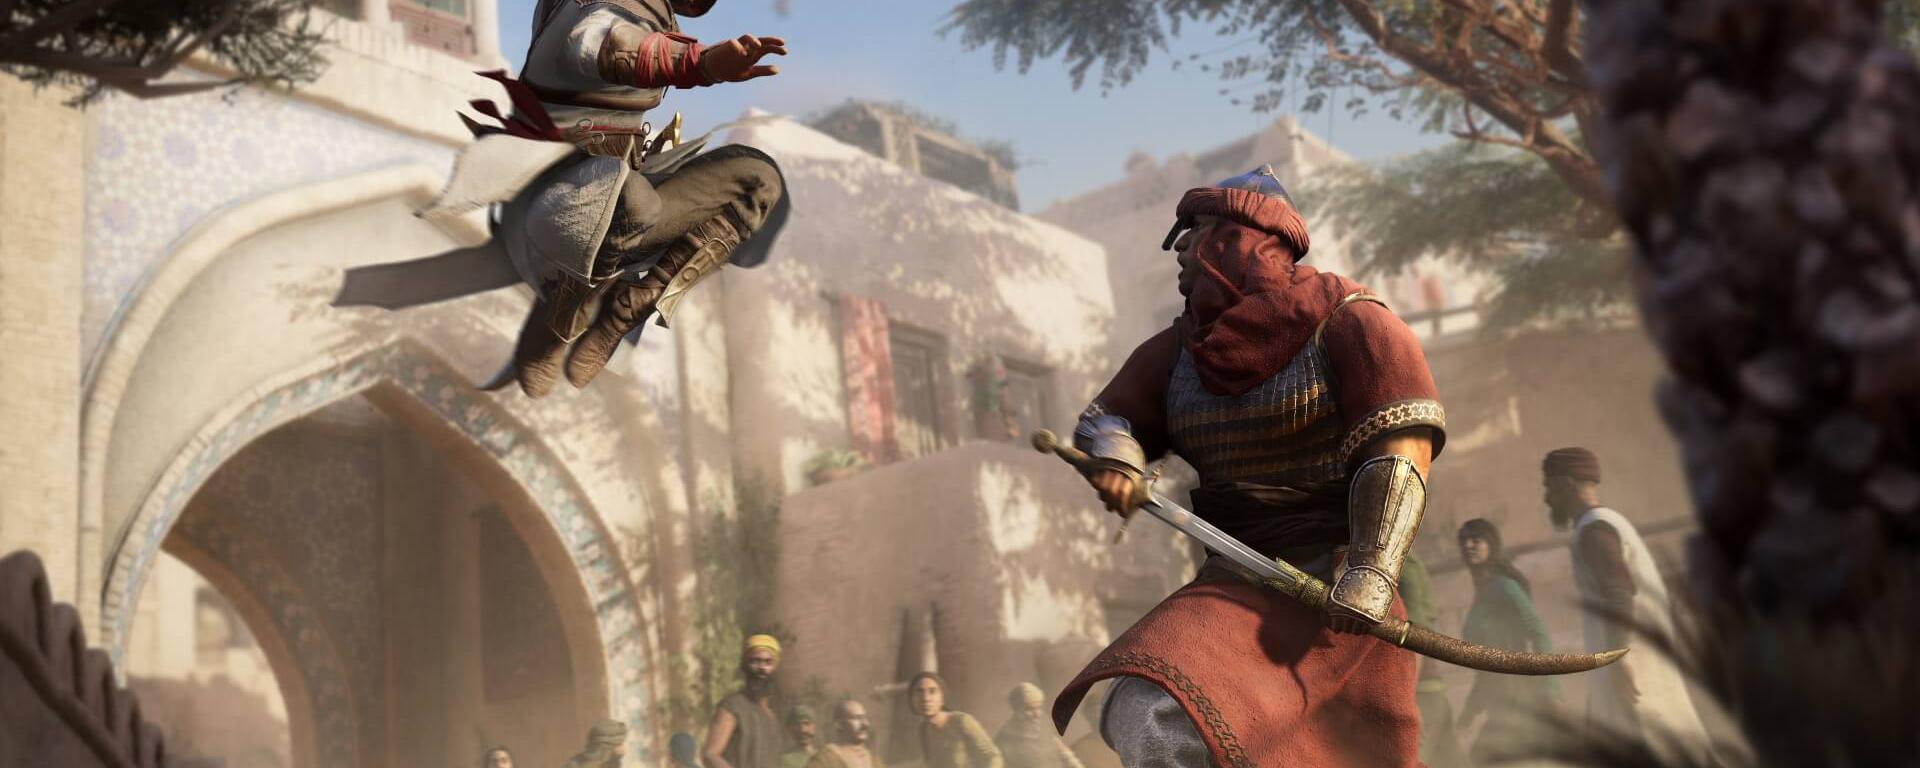 Assassin’s Creed Mirage: tres puntos a tomar en cuenta antes de comprar el videojuego de Ubisoft | RESEÑA